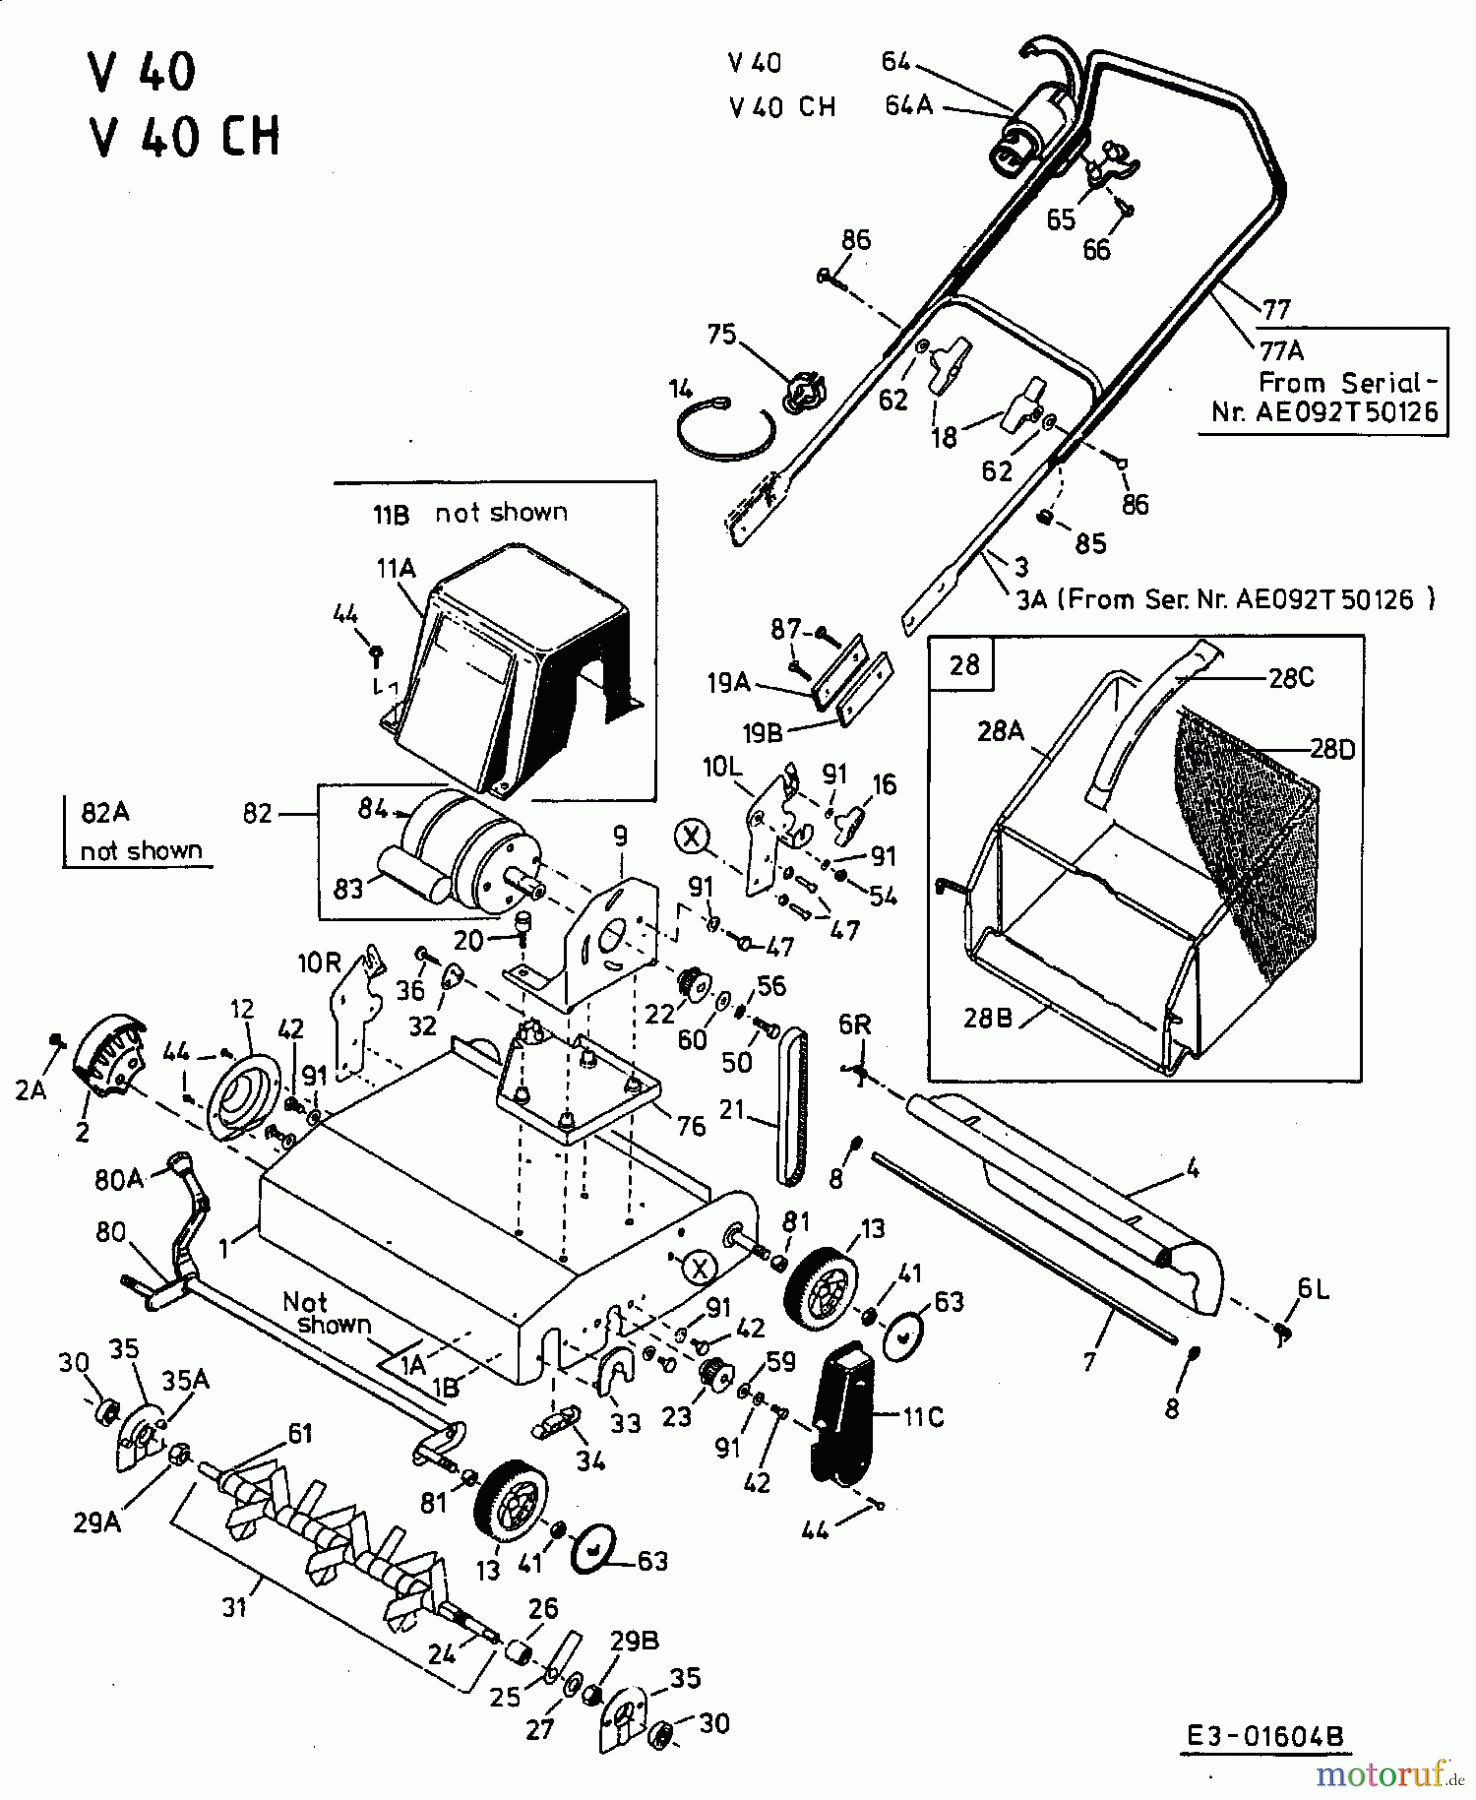  MTD Elektrovertikutierer V 40 16AEM0G-664  (2002) Grundgerät